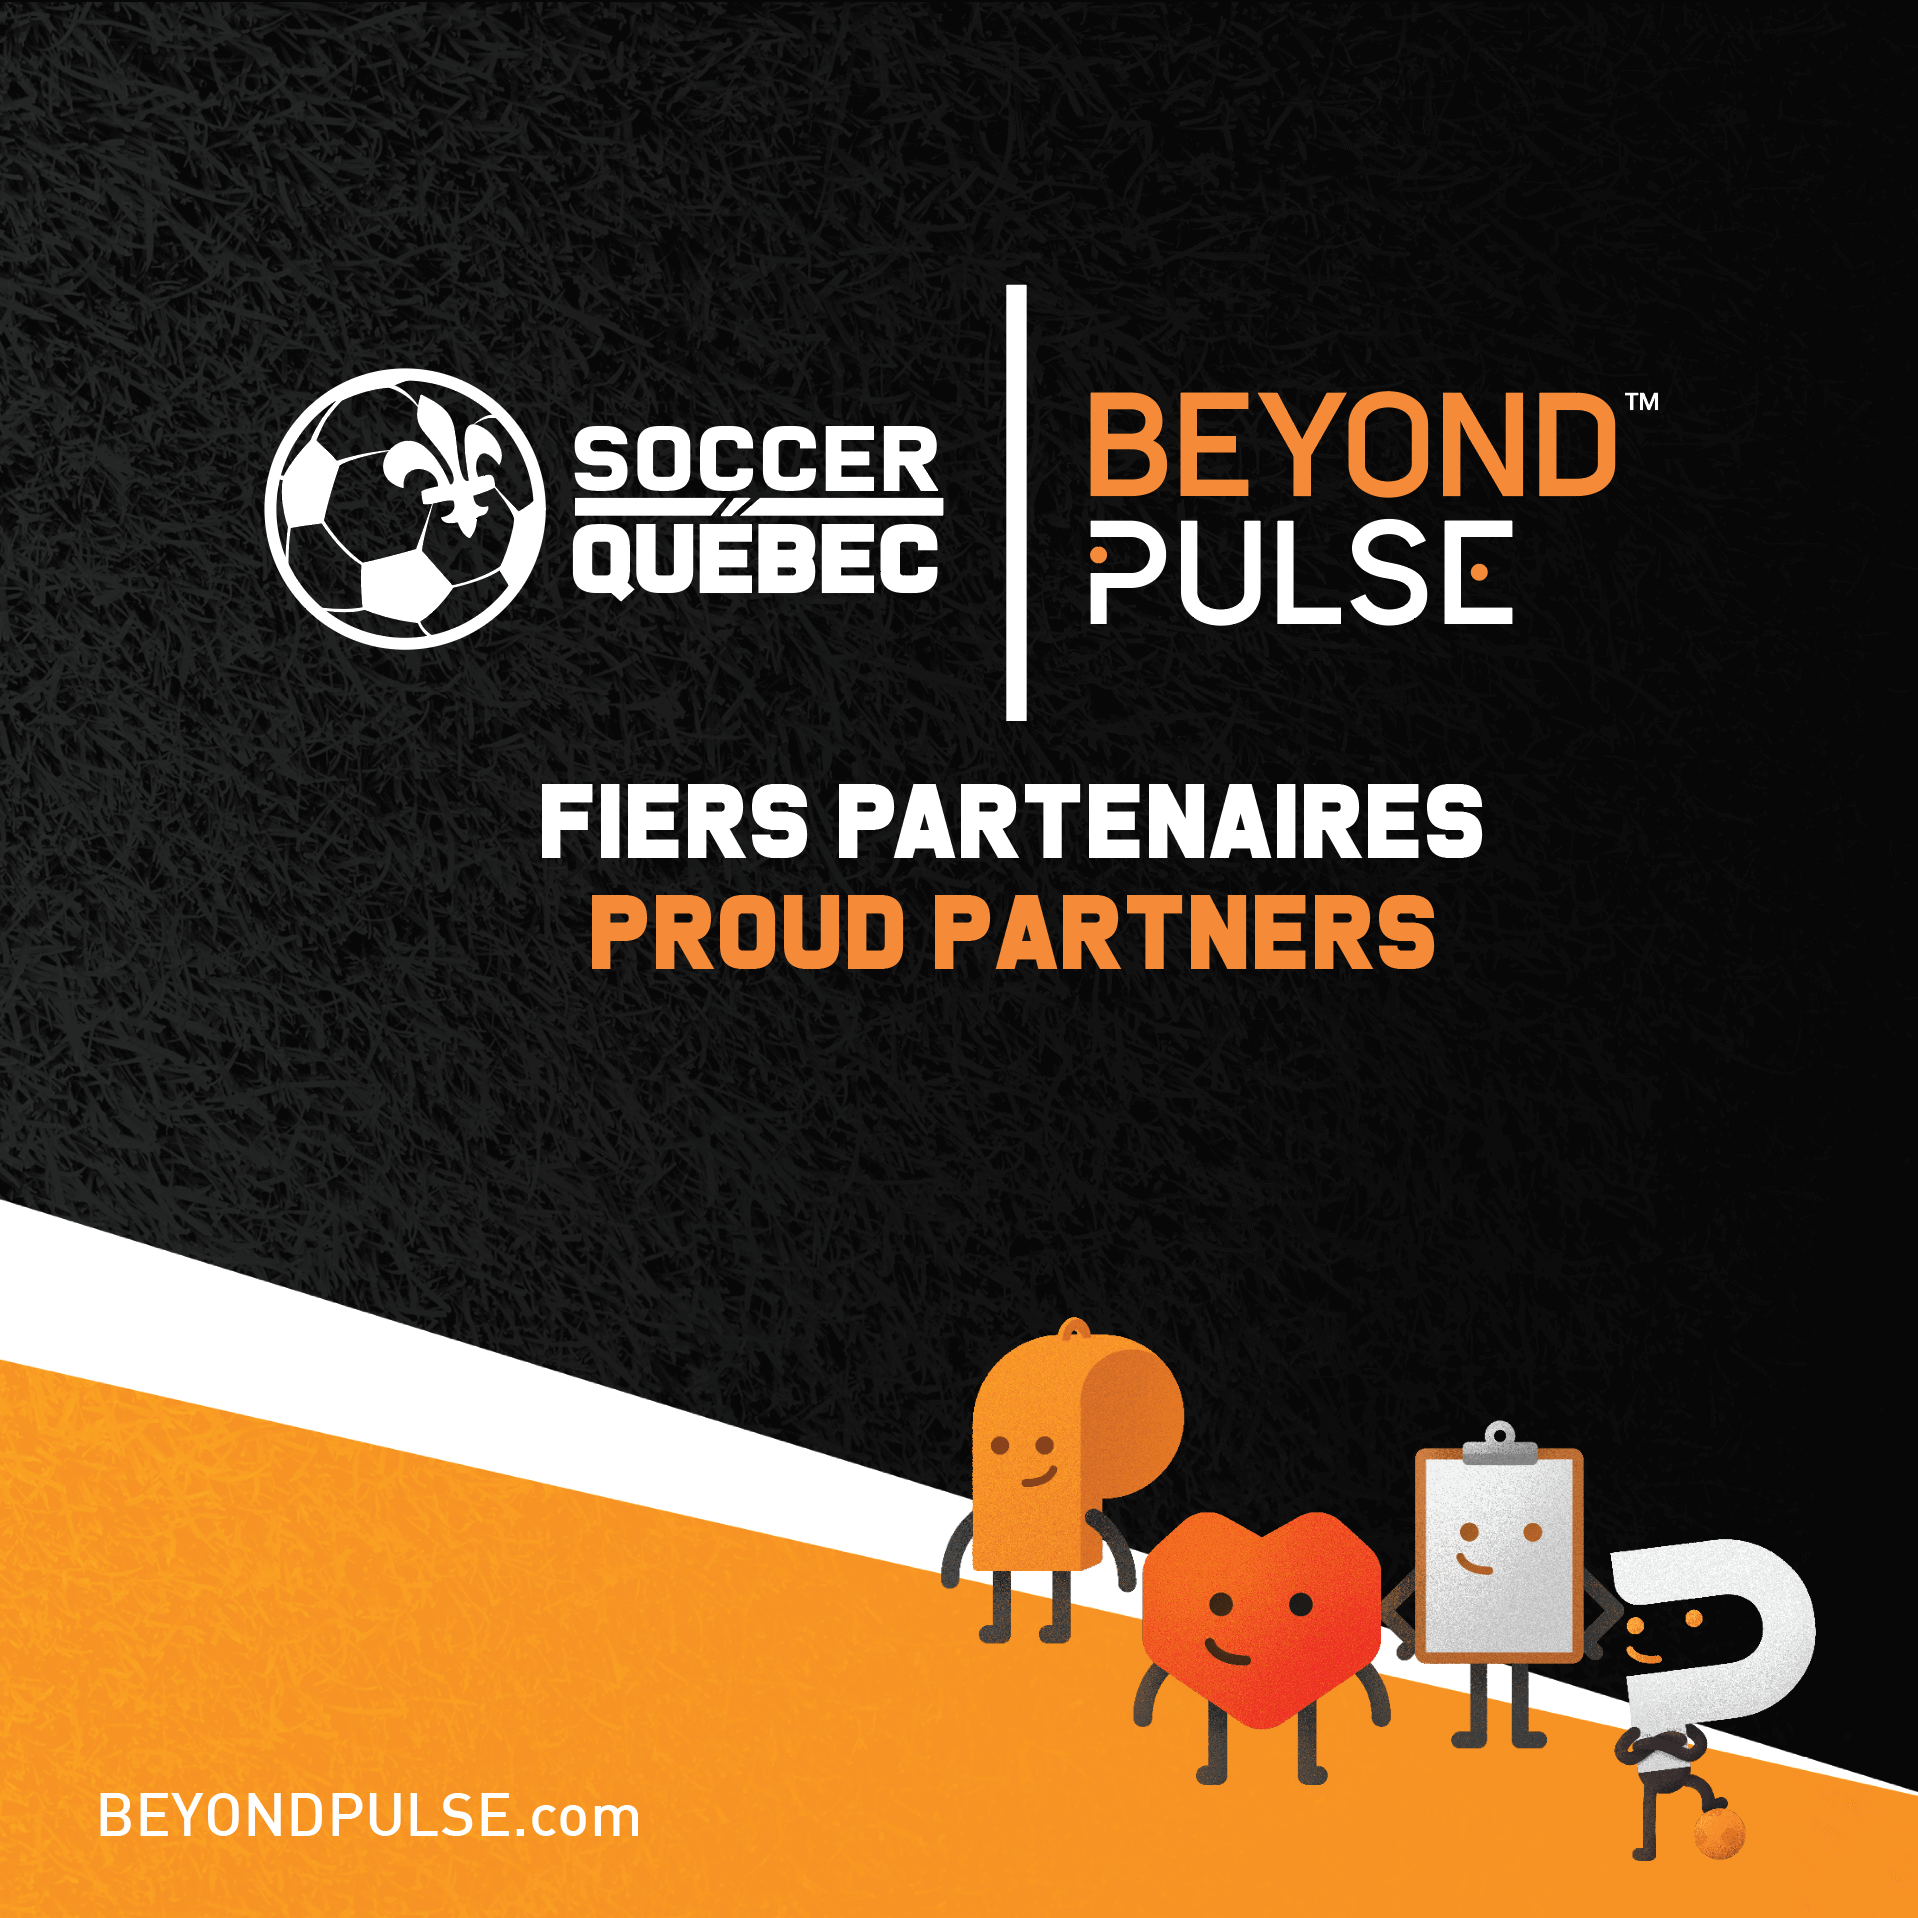 Soccer Québec annonce un partenariat avec Beyond Pulse